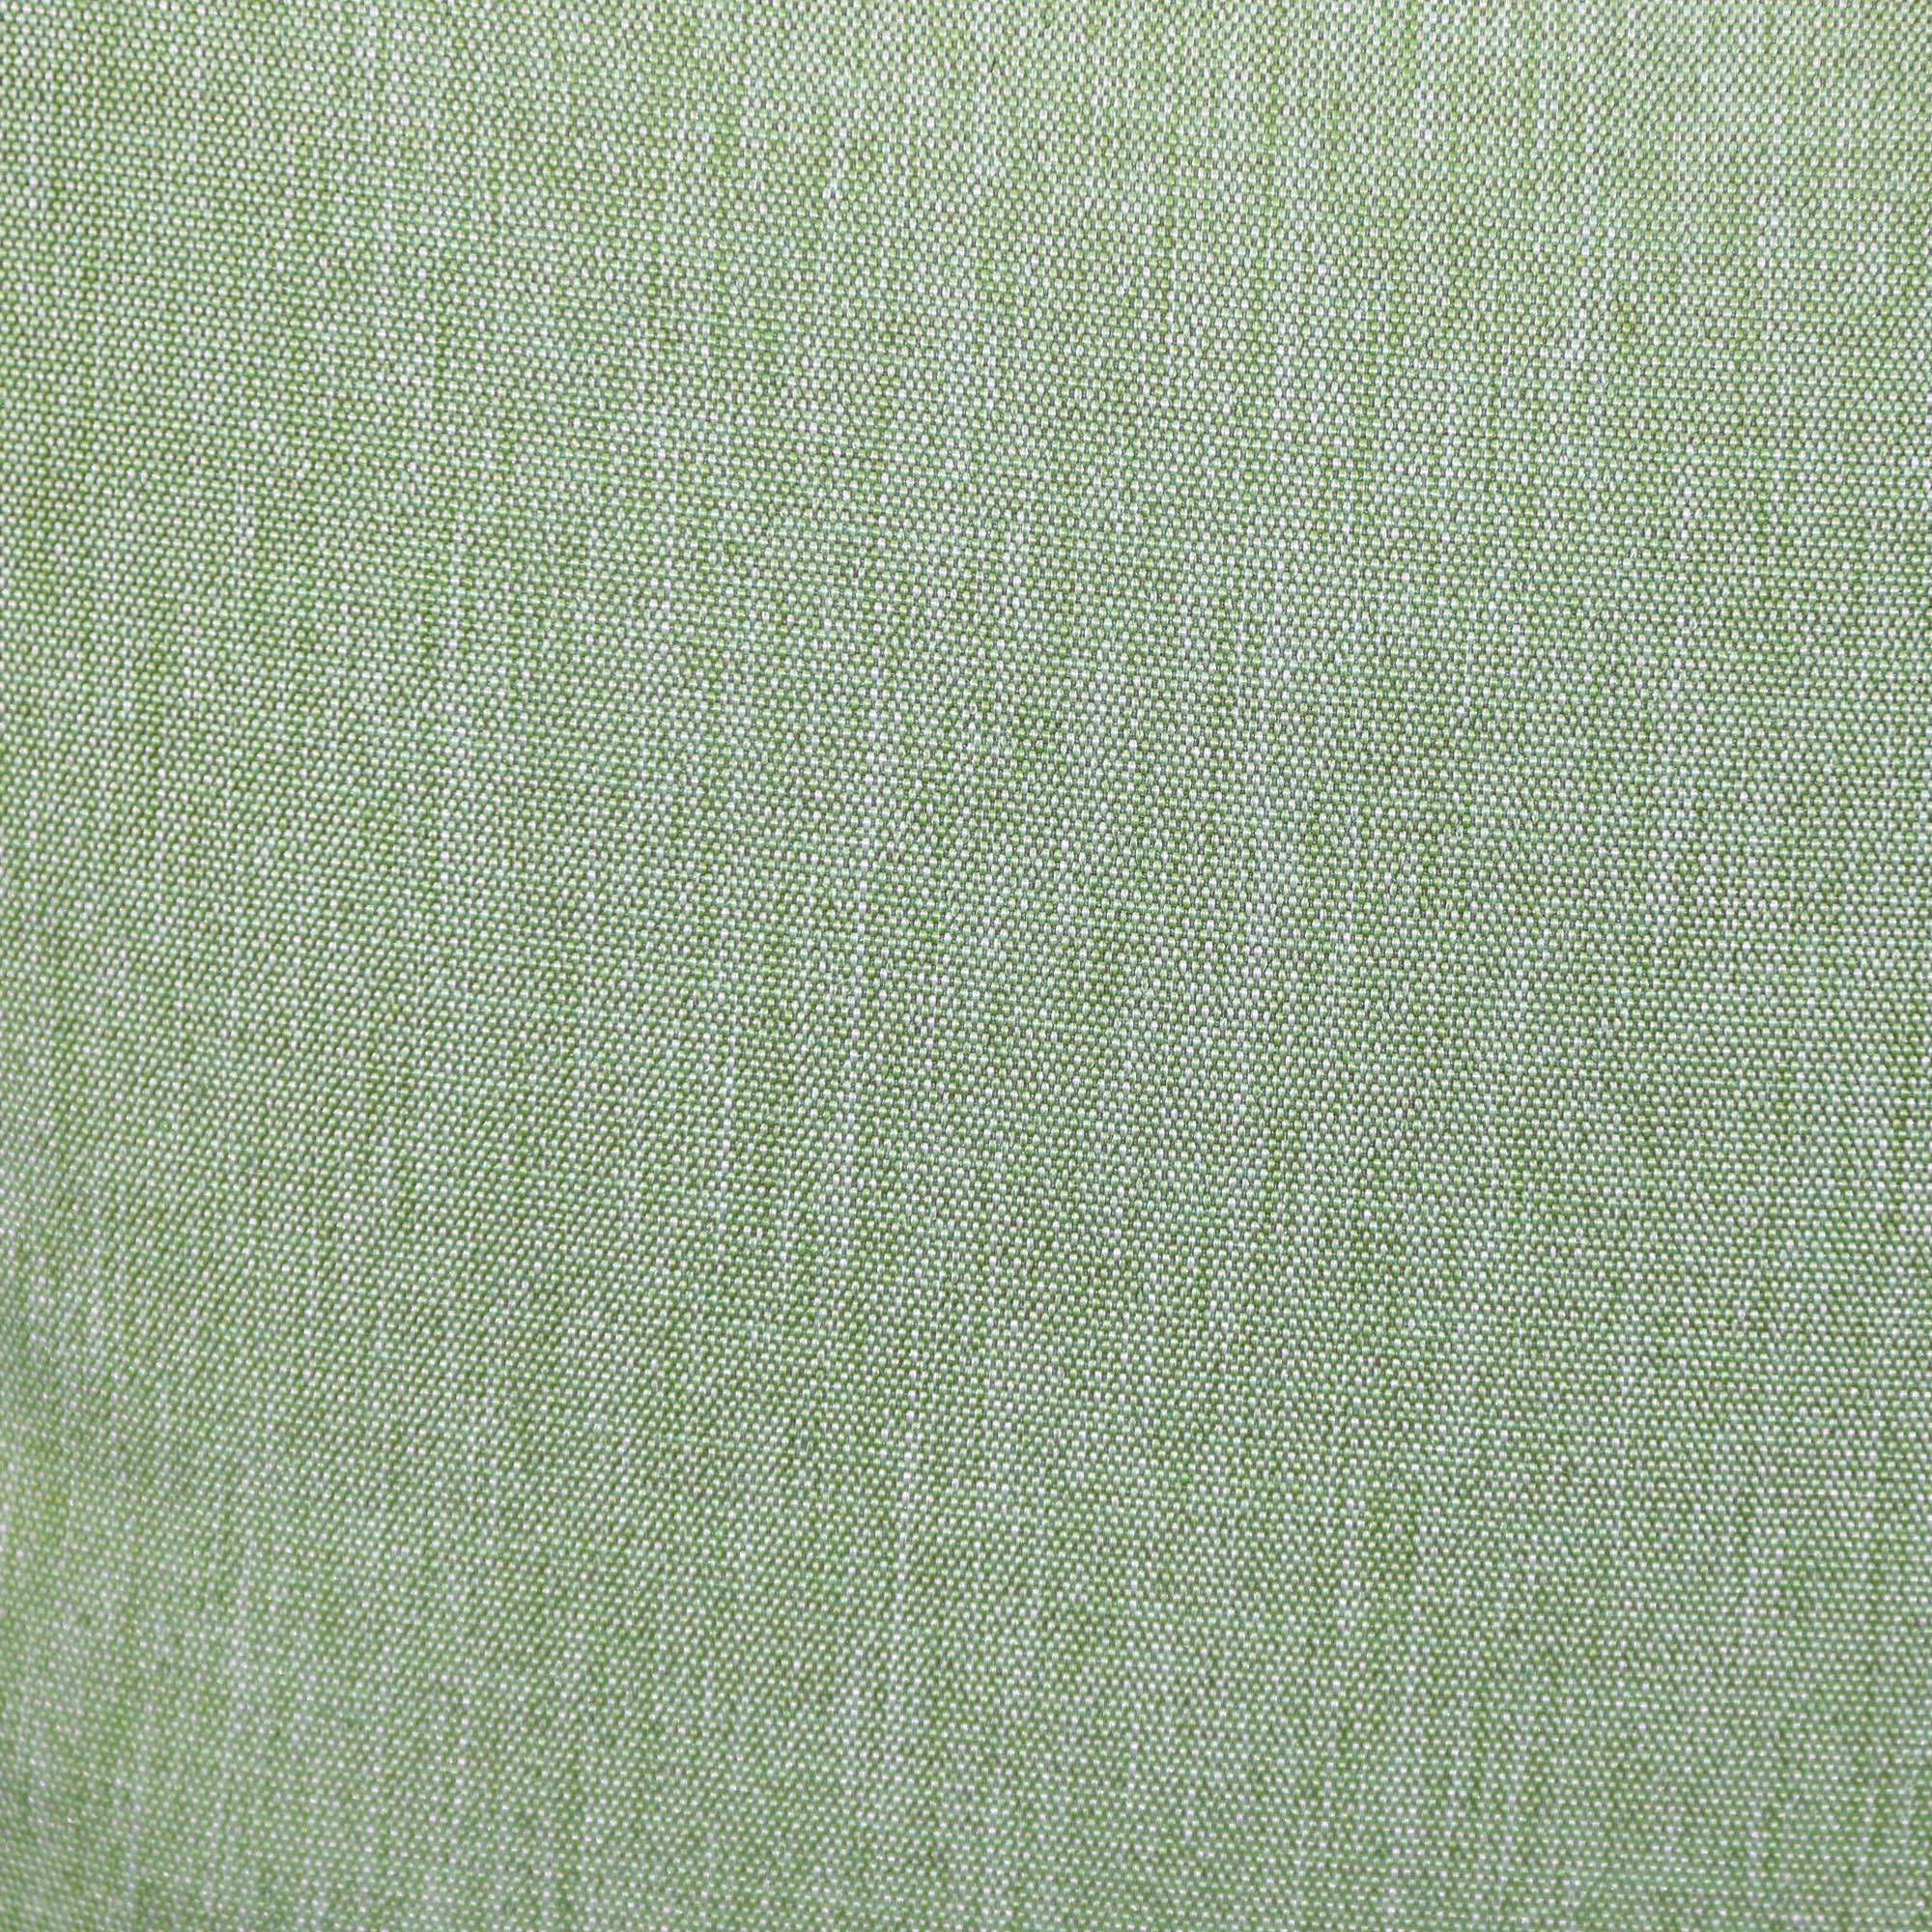 Кресло Drigani Green оливковое с зелёным 72х56х75 см, цвет оливковый - фото 6